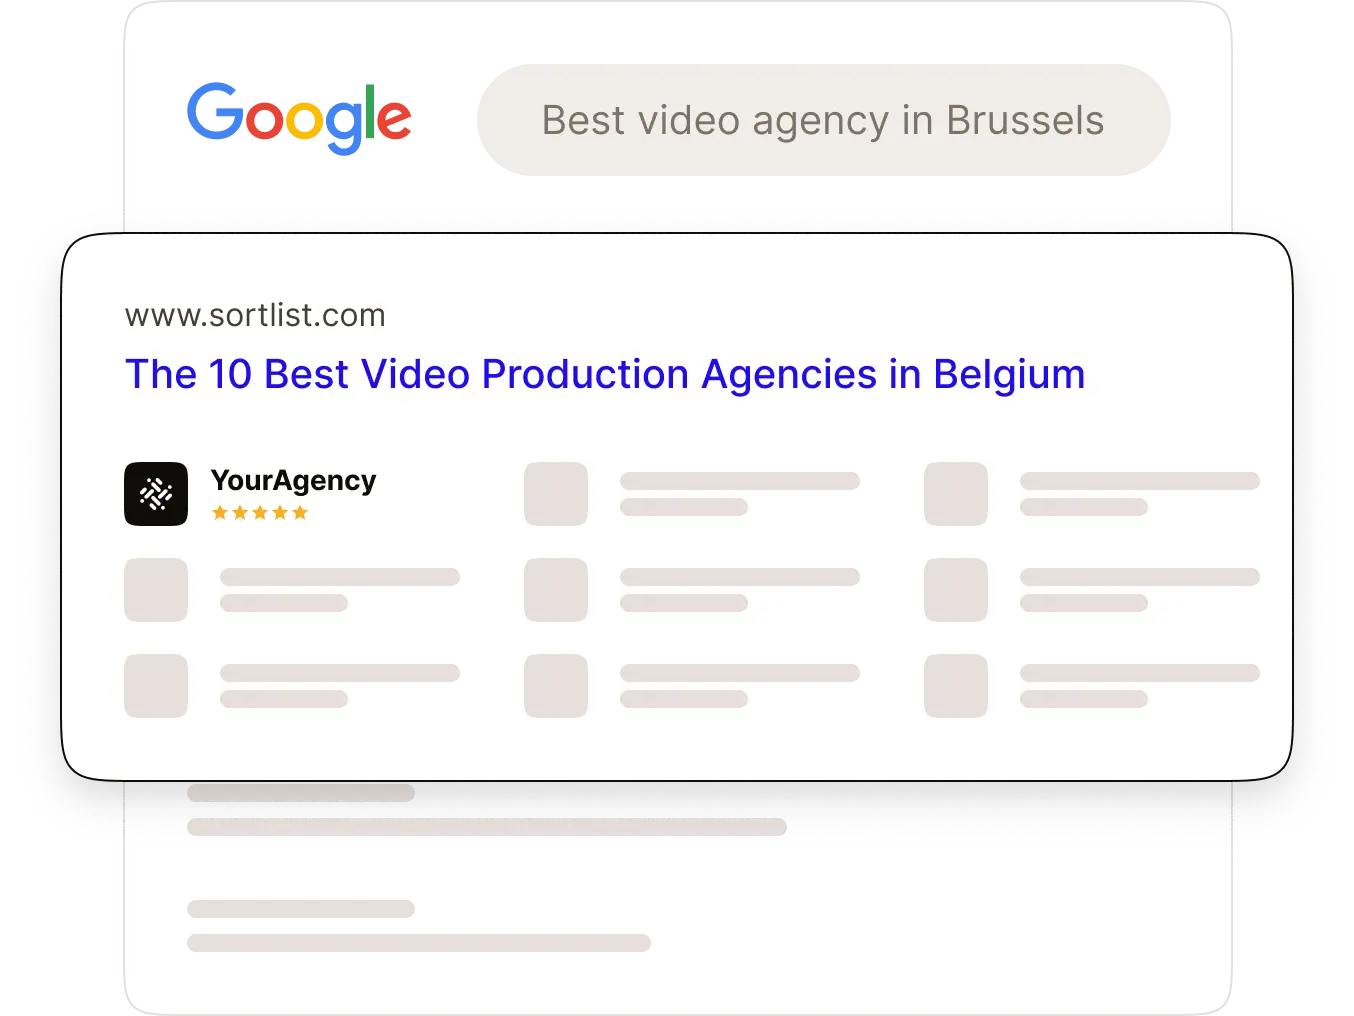 Las 10 mejores agencias de producción de vídeo de Bélgica